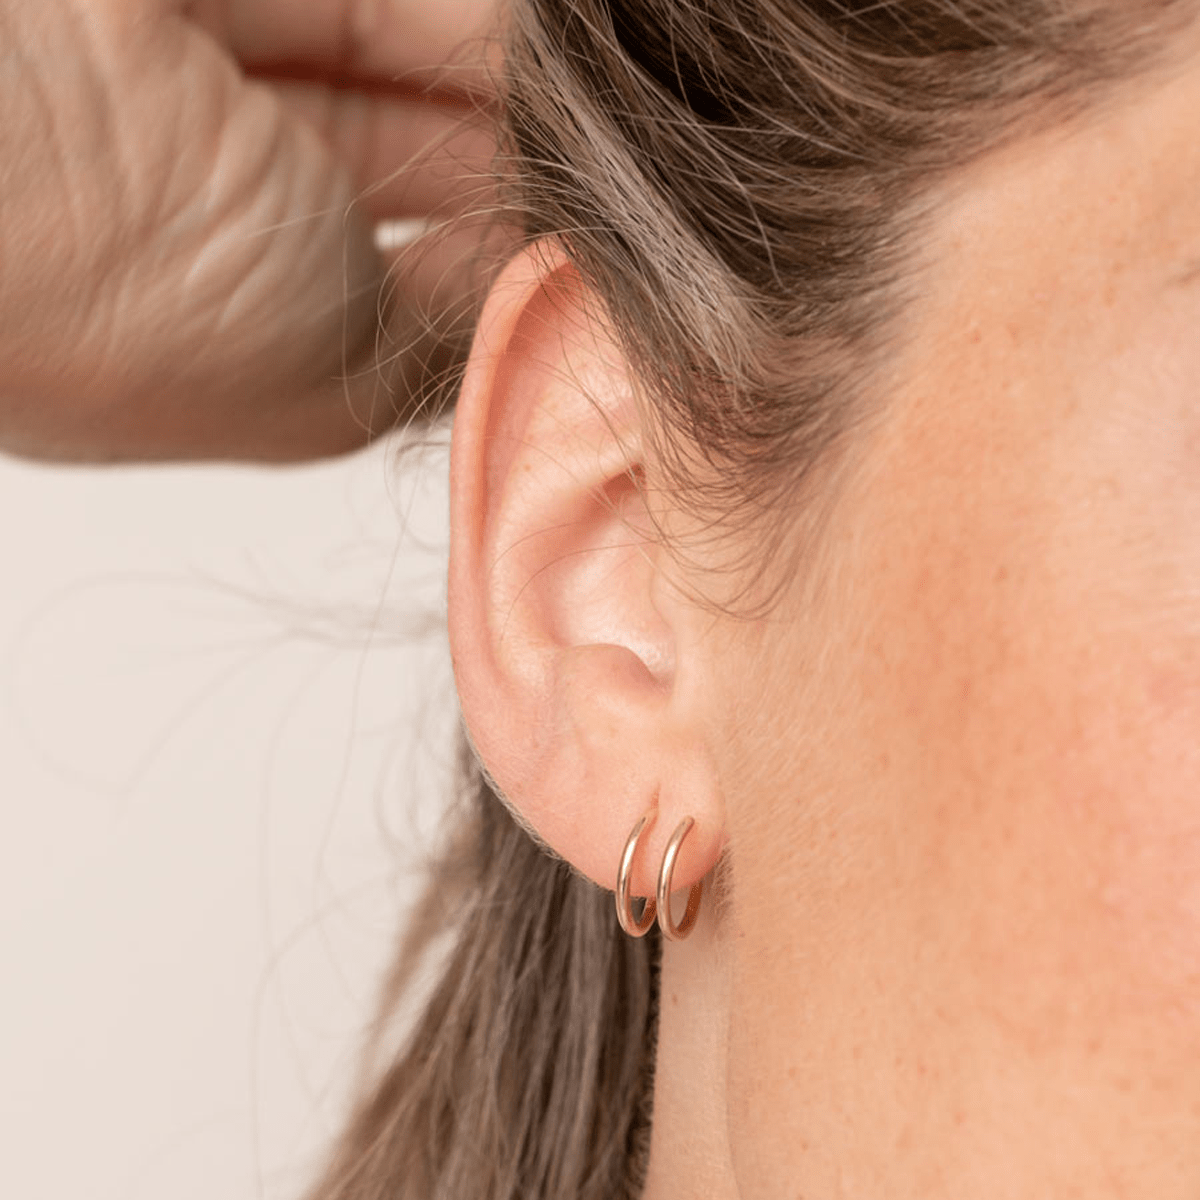 Bar Spiral Earrings Minimal Earrings Double Piercing 